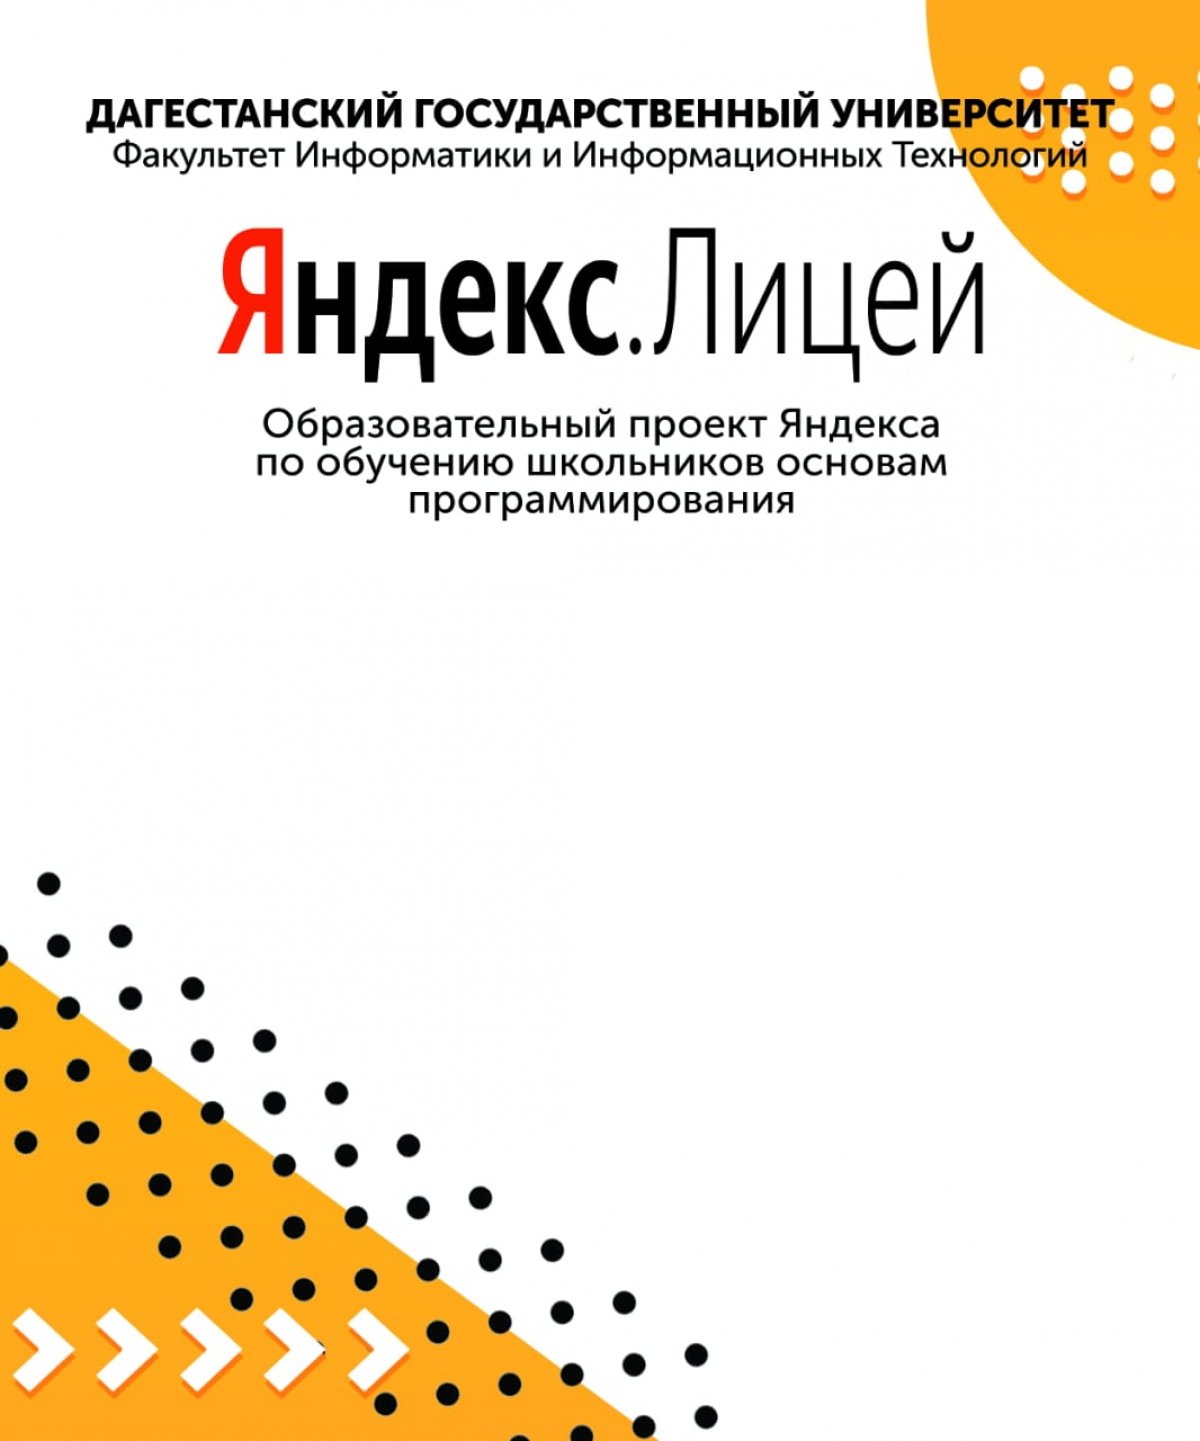 Дагестанский государственный университет получил право стать региональной площадкой реализации федерального проекта «Яндекс. Лицей».